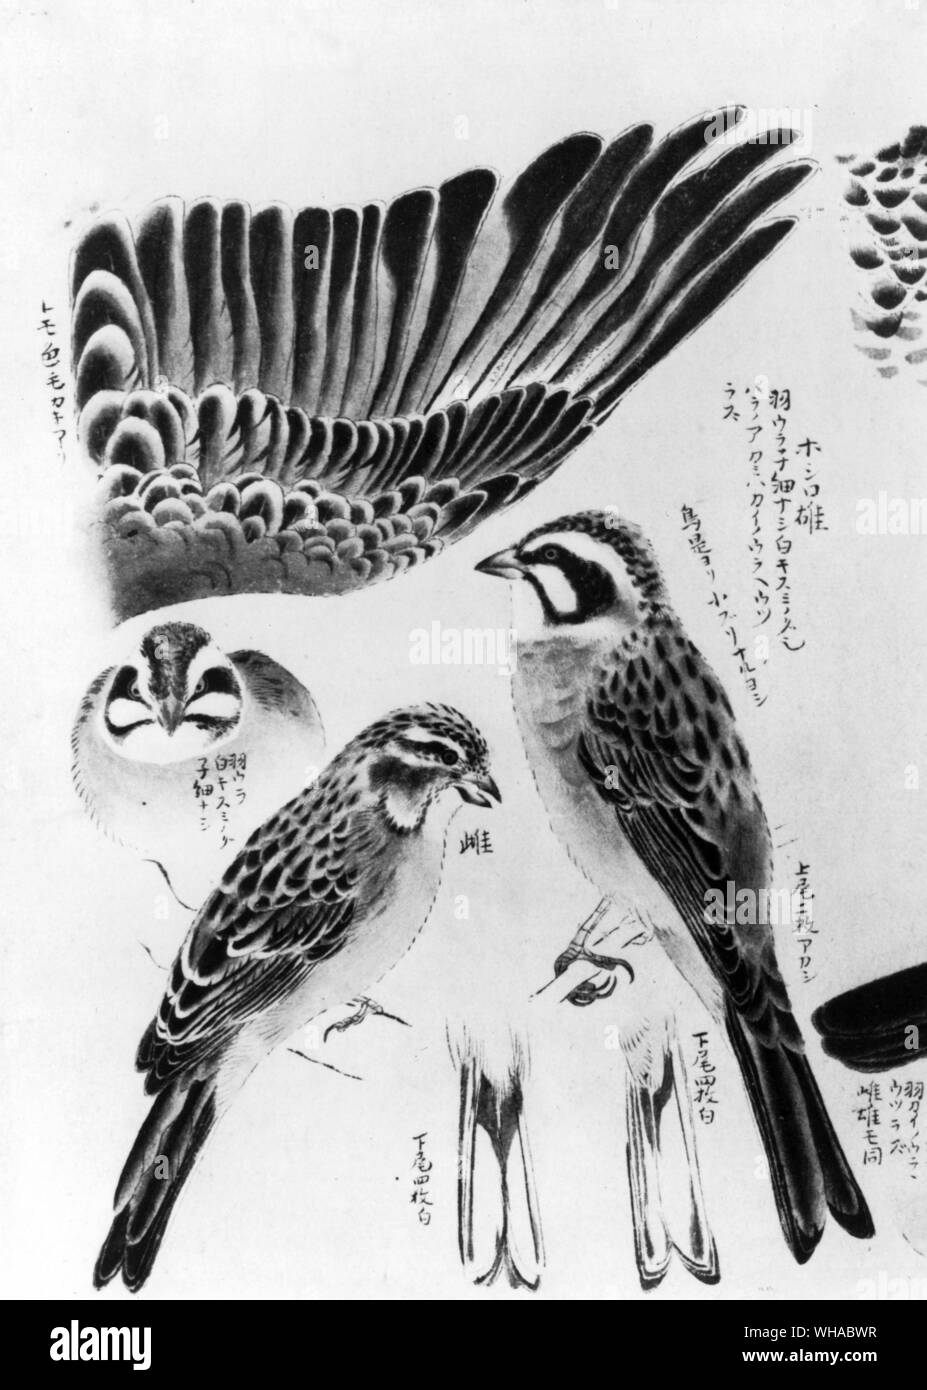 Detaillierte Studien von einem Sibirischen wiese Bunting von Okyo Maruyama 1733-95. In der japanischen Malerei eine dekorative und sorgfältige Gestaltung war in der Regel wichtiger als die Treue zu der Natur. Maruyama, der ermutigt seine Schüler detaillierte Studien aus der Natur zu machen, wird als der Gründer des Naturalismus in der japanischen Malerei gutgeschrieben Stockfoto